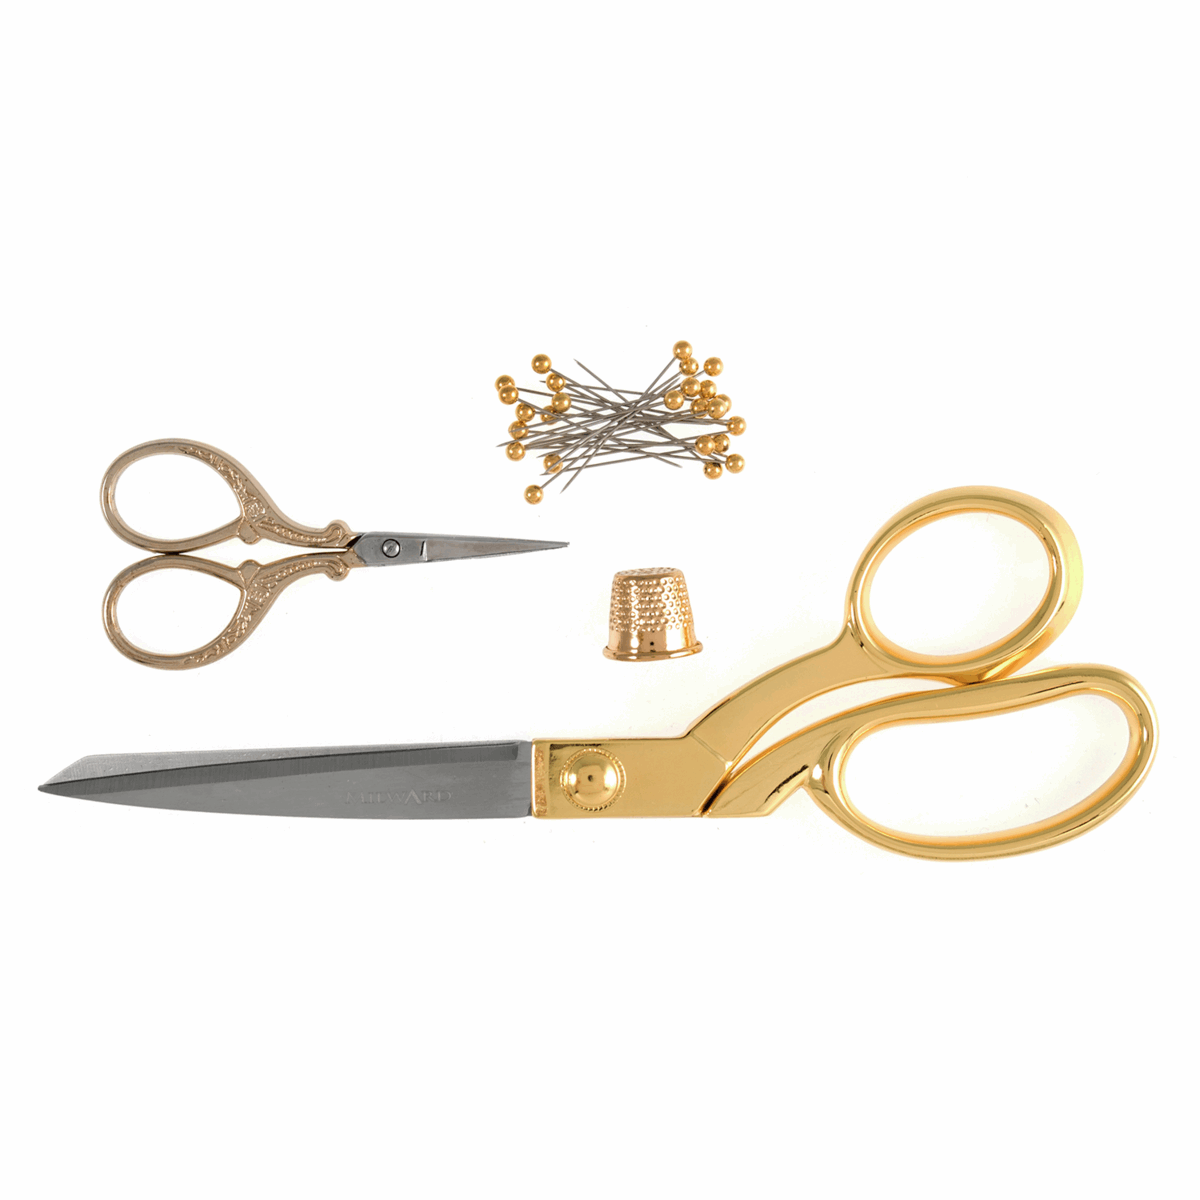 Milwards gold scissors gift set